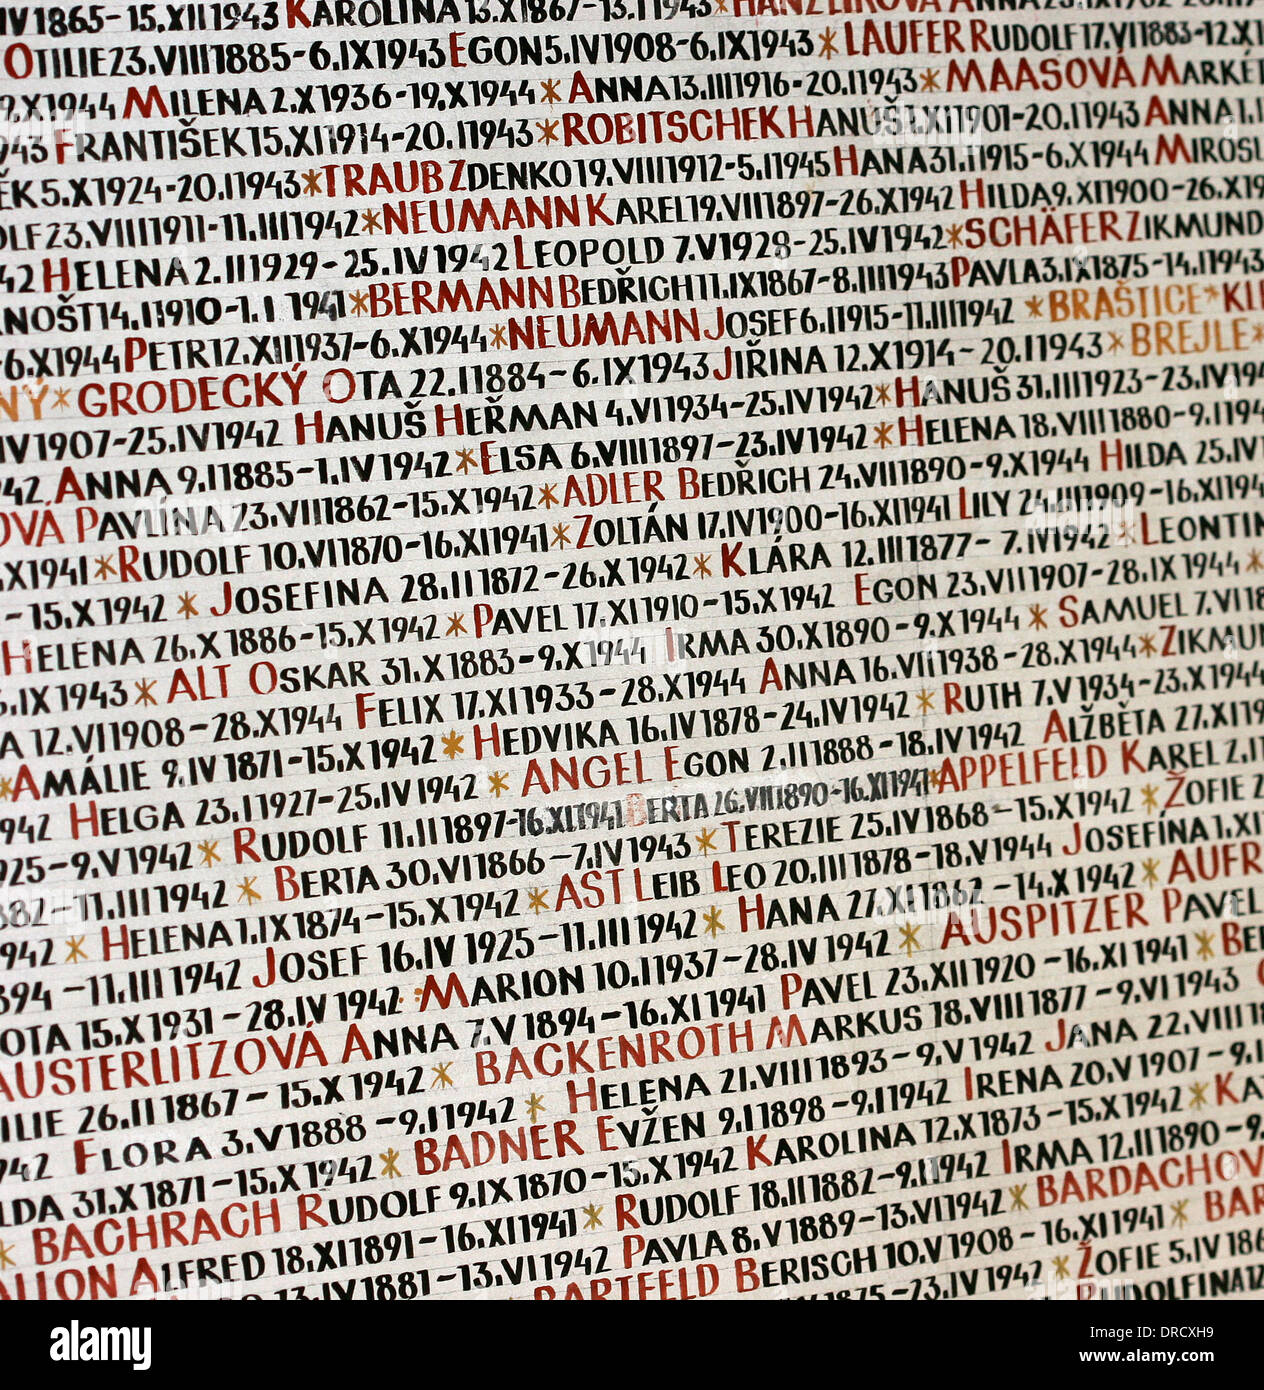 Repubblica ceca. Praga. Pinkas sinagoga. I nomi delle vittime della Shoah sulle pareti. Foto Stock